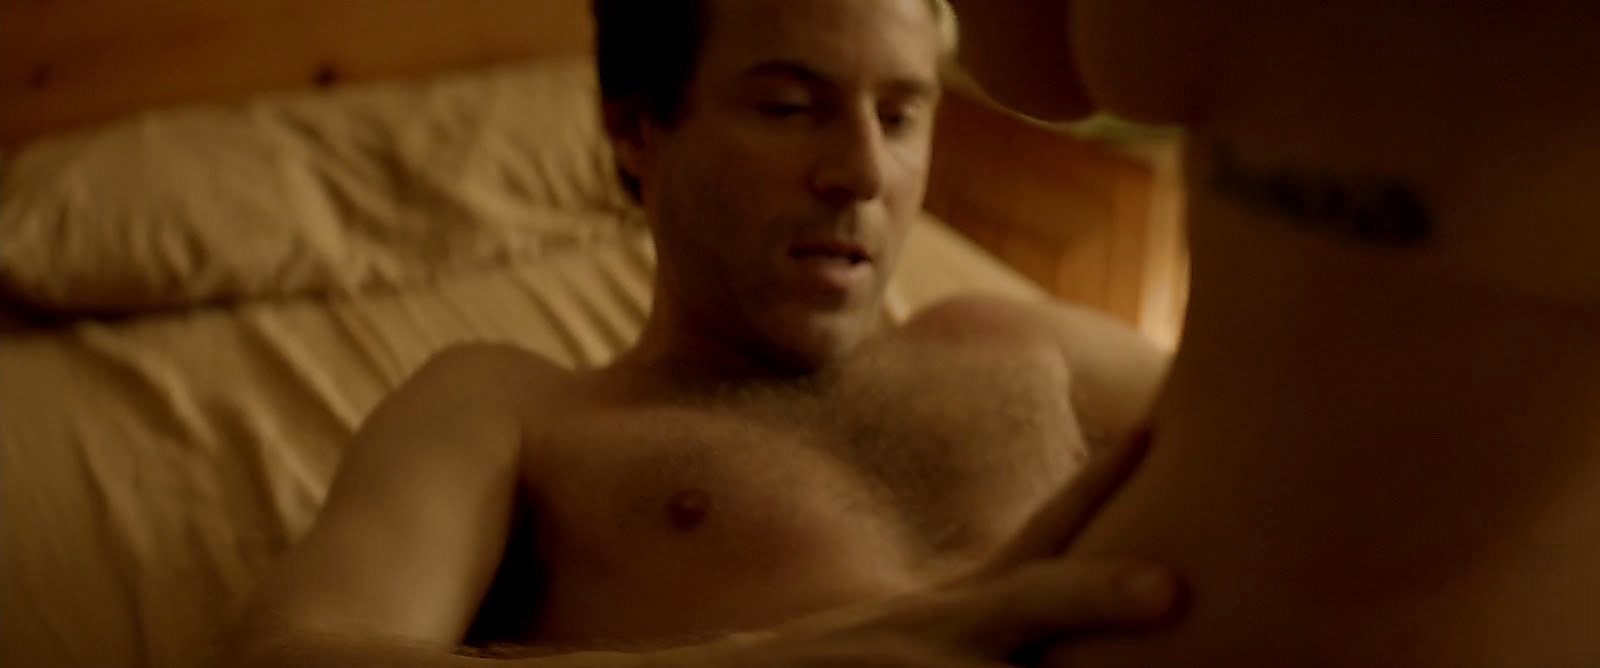 Alessandro Nivola sexy shirtless scene February 1, 2018, 11am